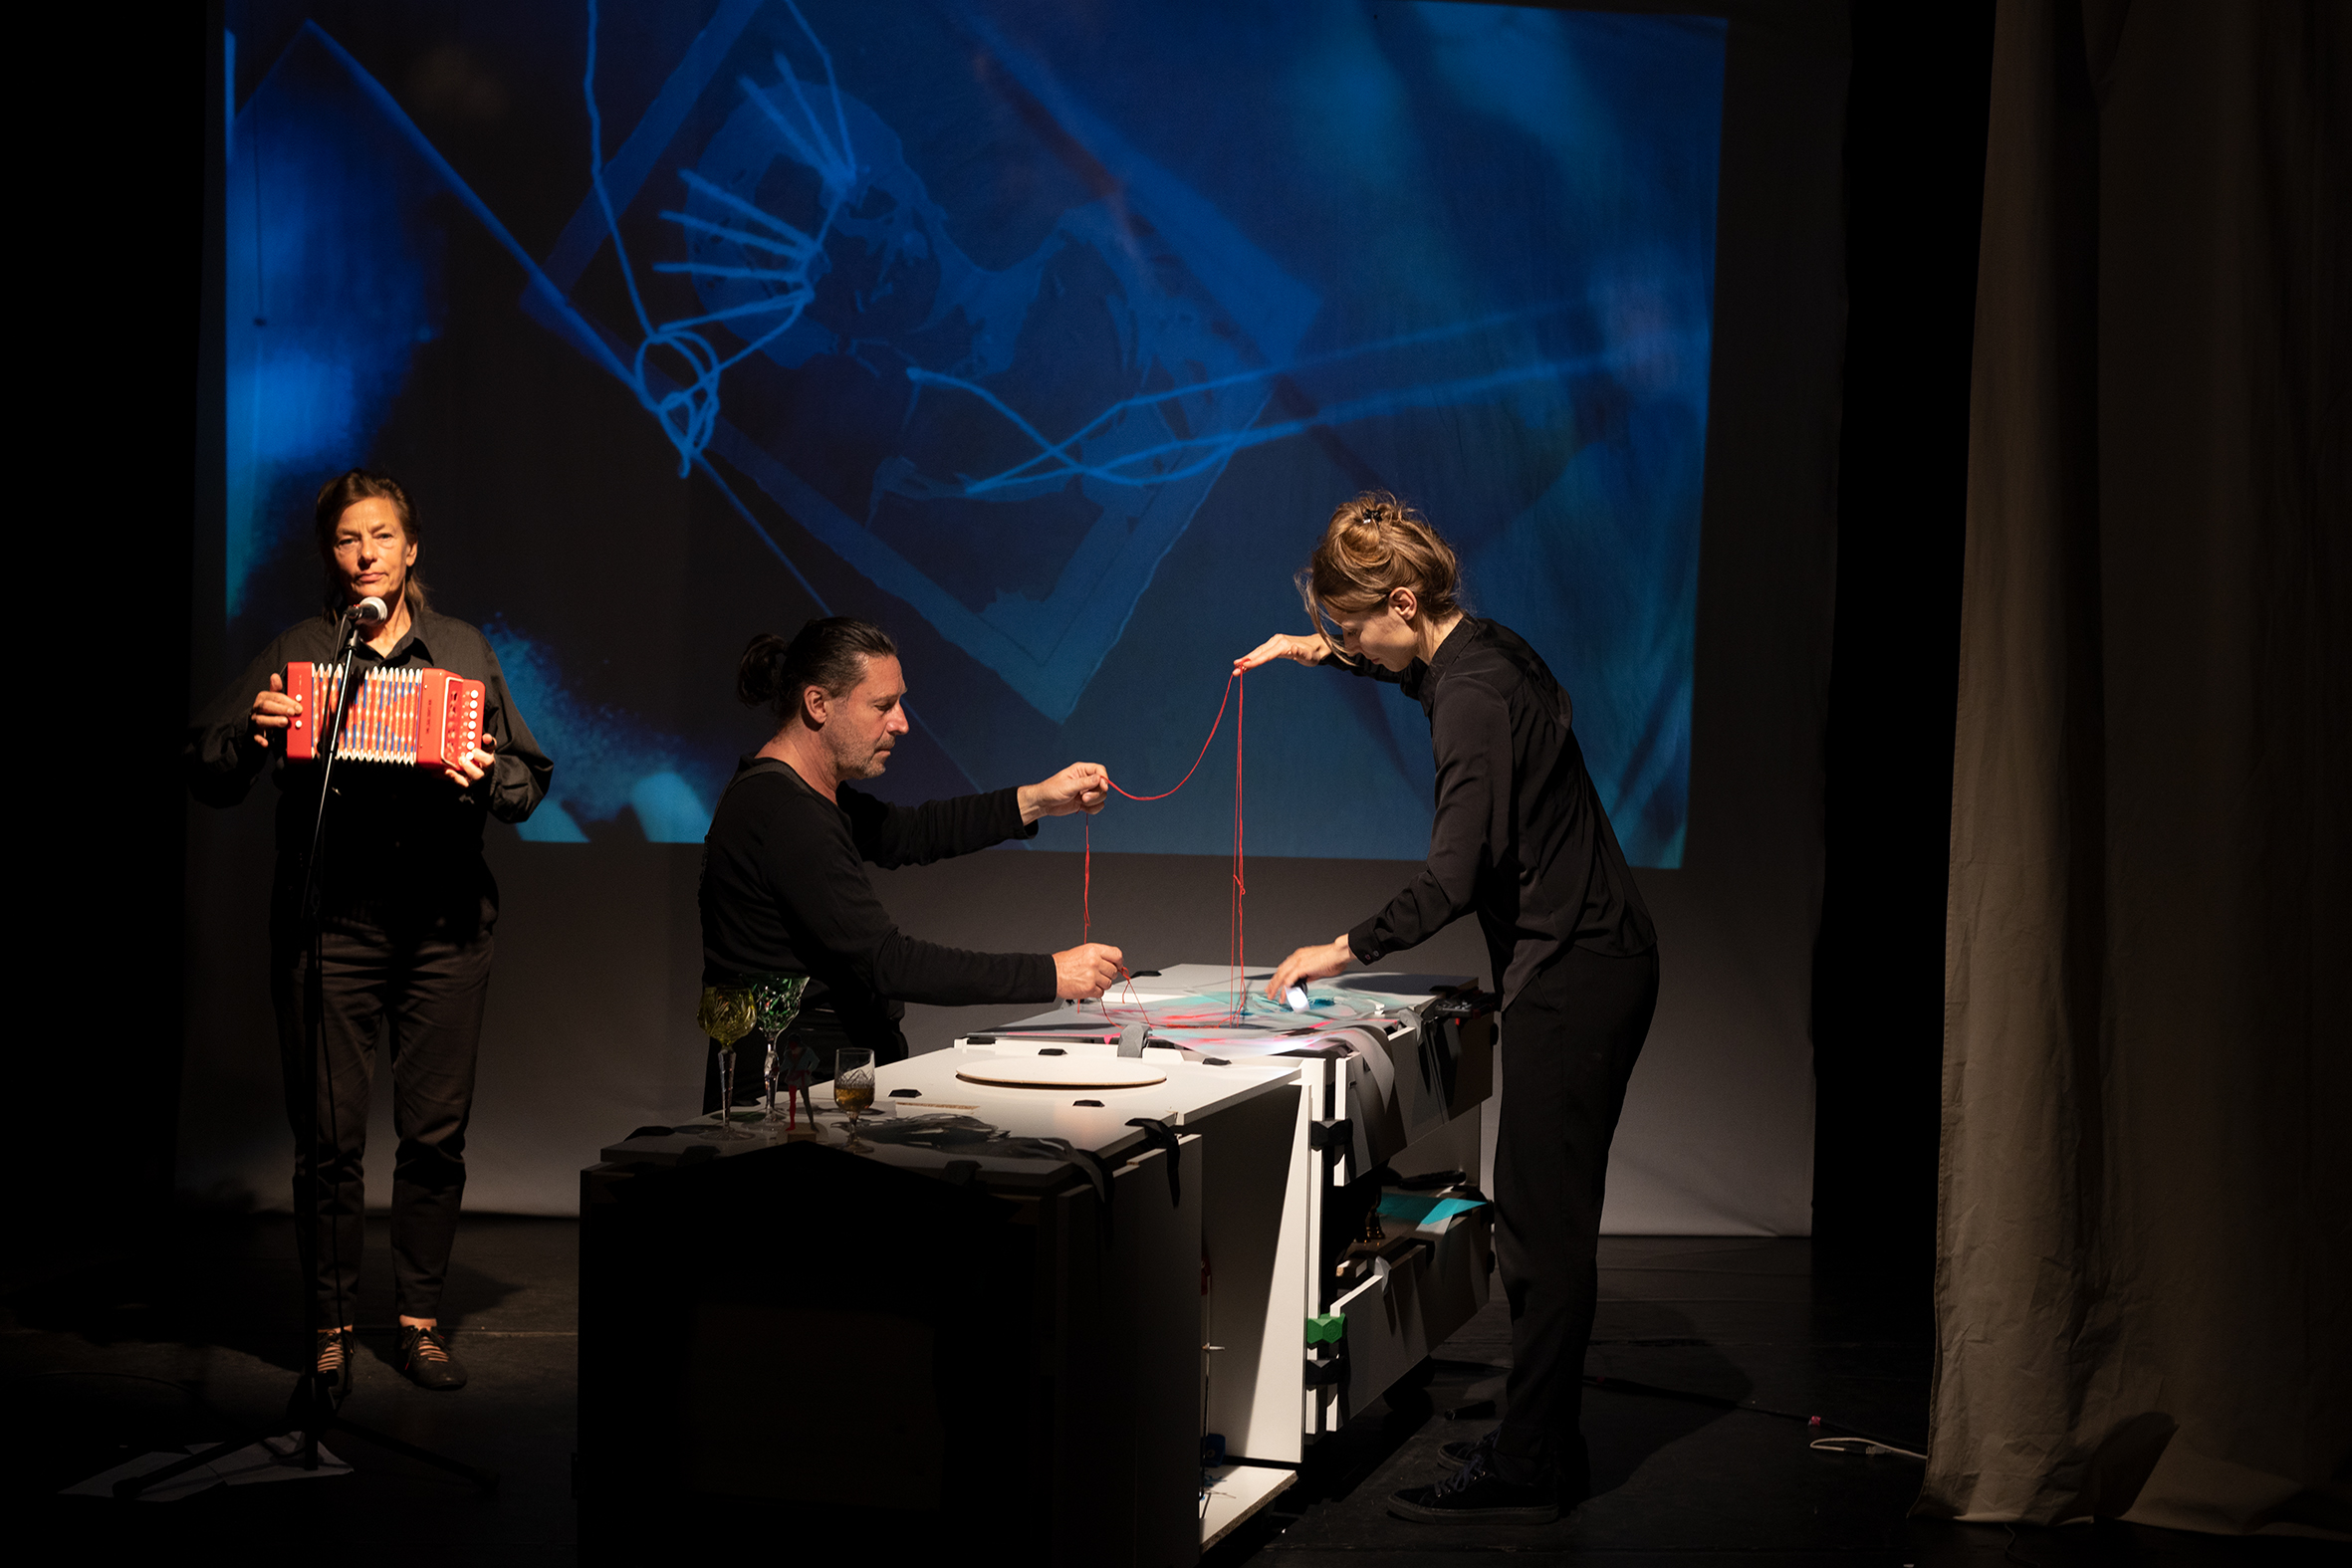 Zwei Schauspieler an einem Tisch mit Dingen aus Papier halten zusammen einen roten Faden. Links neben ihnen steht eine weitere Person auf der Bühne mit einem roten Kinder-Akkordeon. Im Hintergrund ist auf einer Leinwand eine Video-Projektion zu sehen.